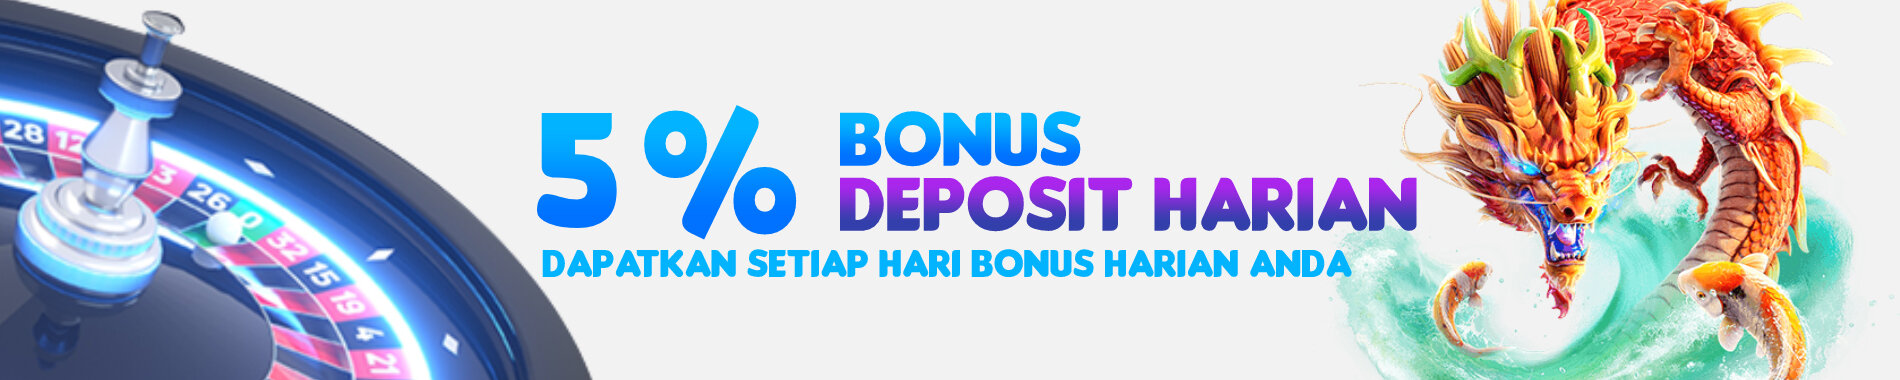 bonus deposit harian 5%